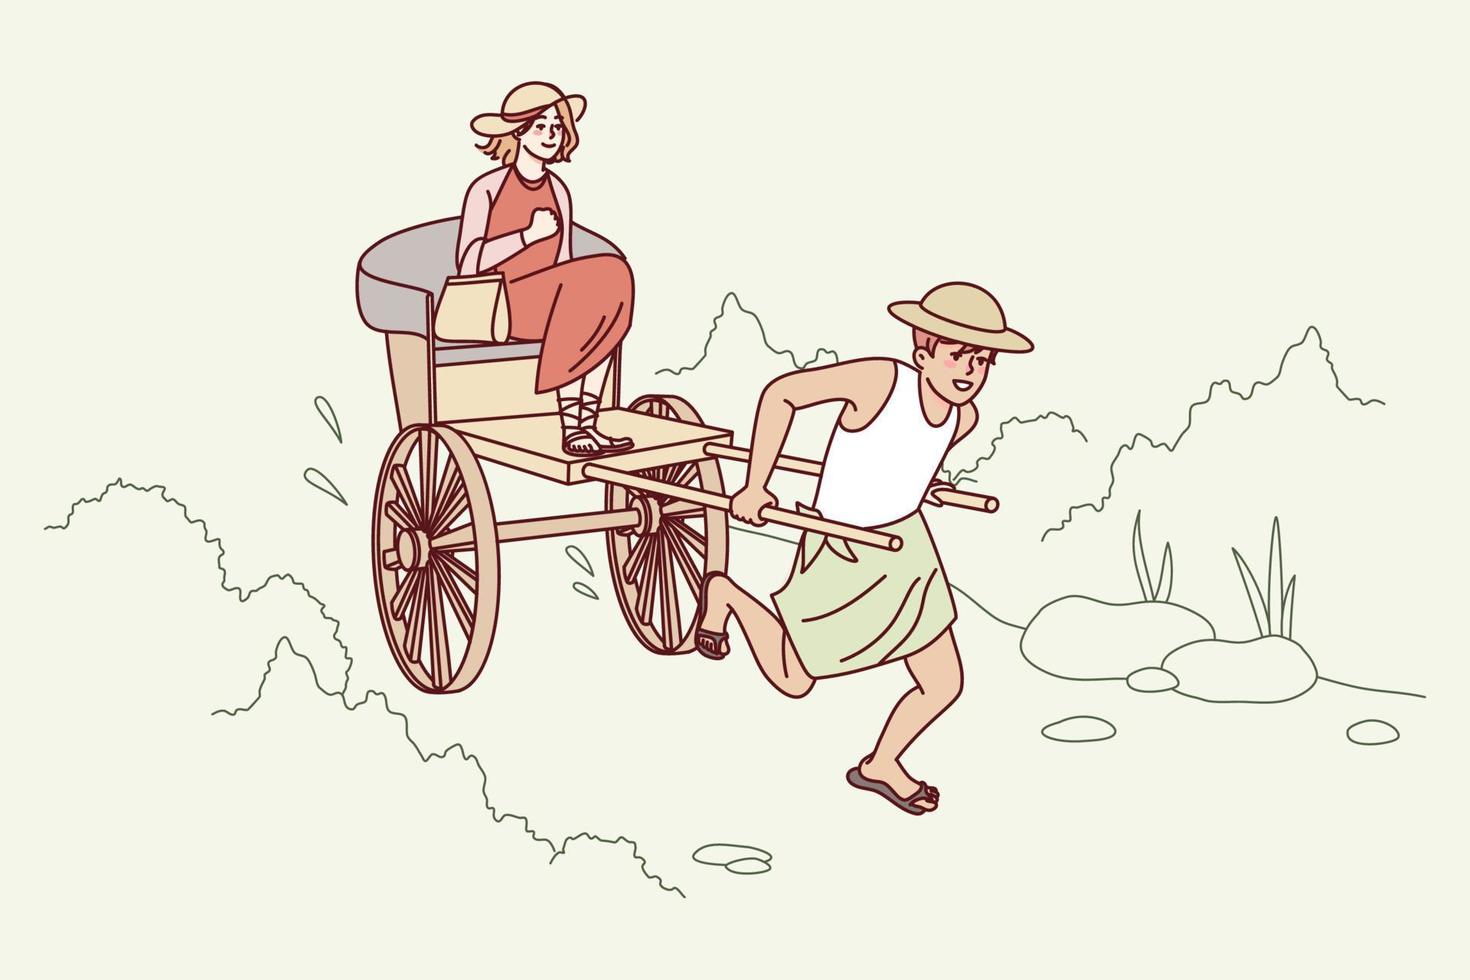 Mens trekken riksja met vrouw zitten. vent met op wielen kar rijden vrouw cliënt buitenshuis. vector illustratie.